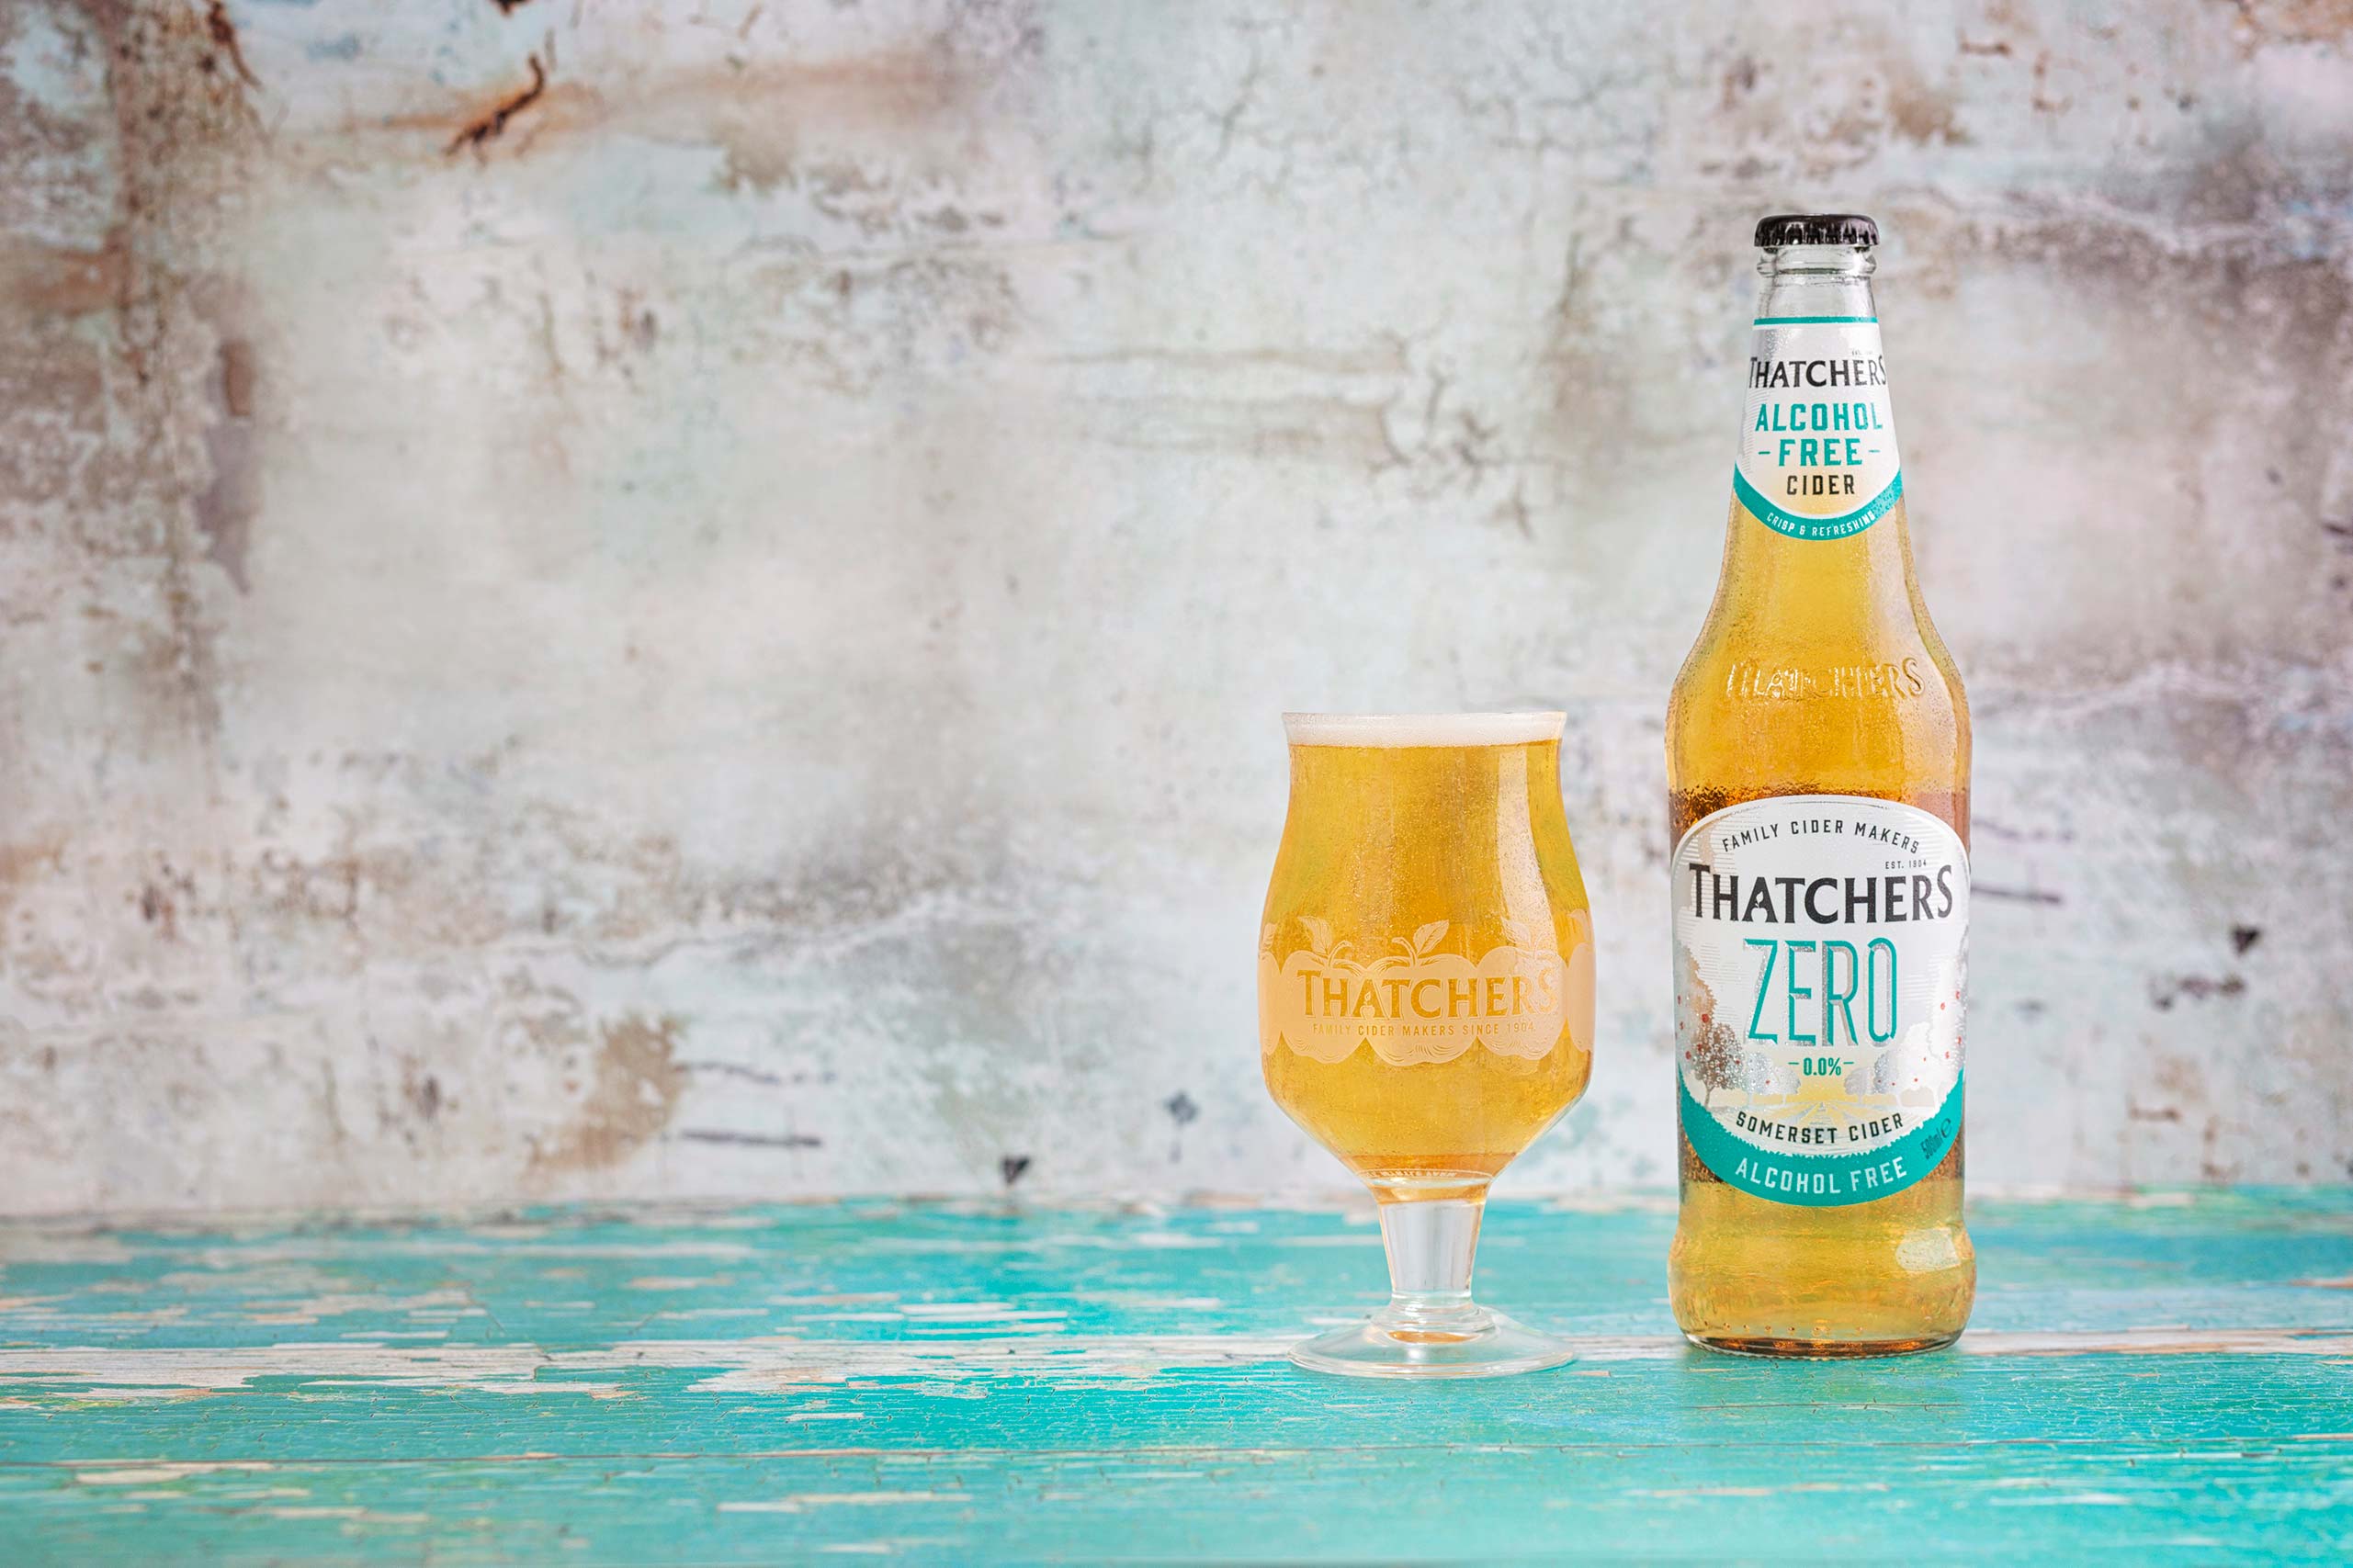 Thatchers Zero 0,0% Vol.- Somerset Cider alkoholfrei 0,5l - Apfelwein